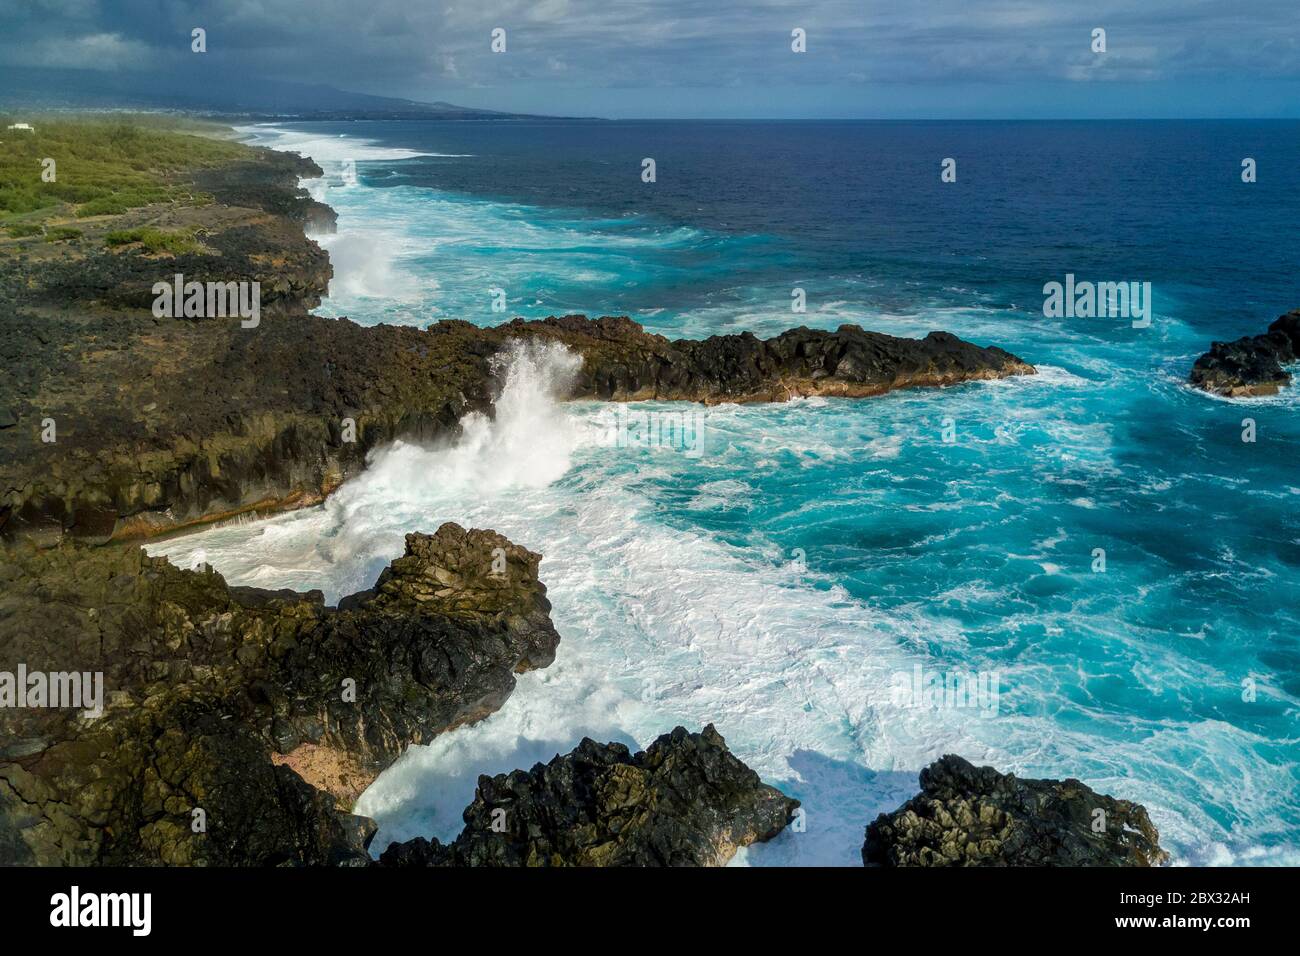 Francia, isola di Reunion (dipartimento francese d'oltremare), l'Etang Salé les Bains, la costa tra le Gouffre e l'Etang du Gol (Stagno di Gol), rocce basaltiche nere di origine vulcanica tormentate dall'oceano (vista aerea) Foto Stock